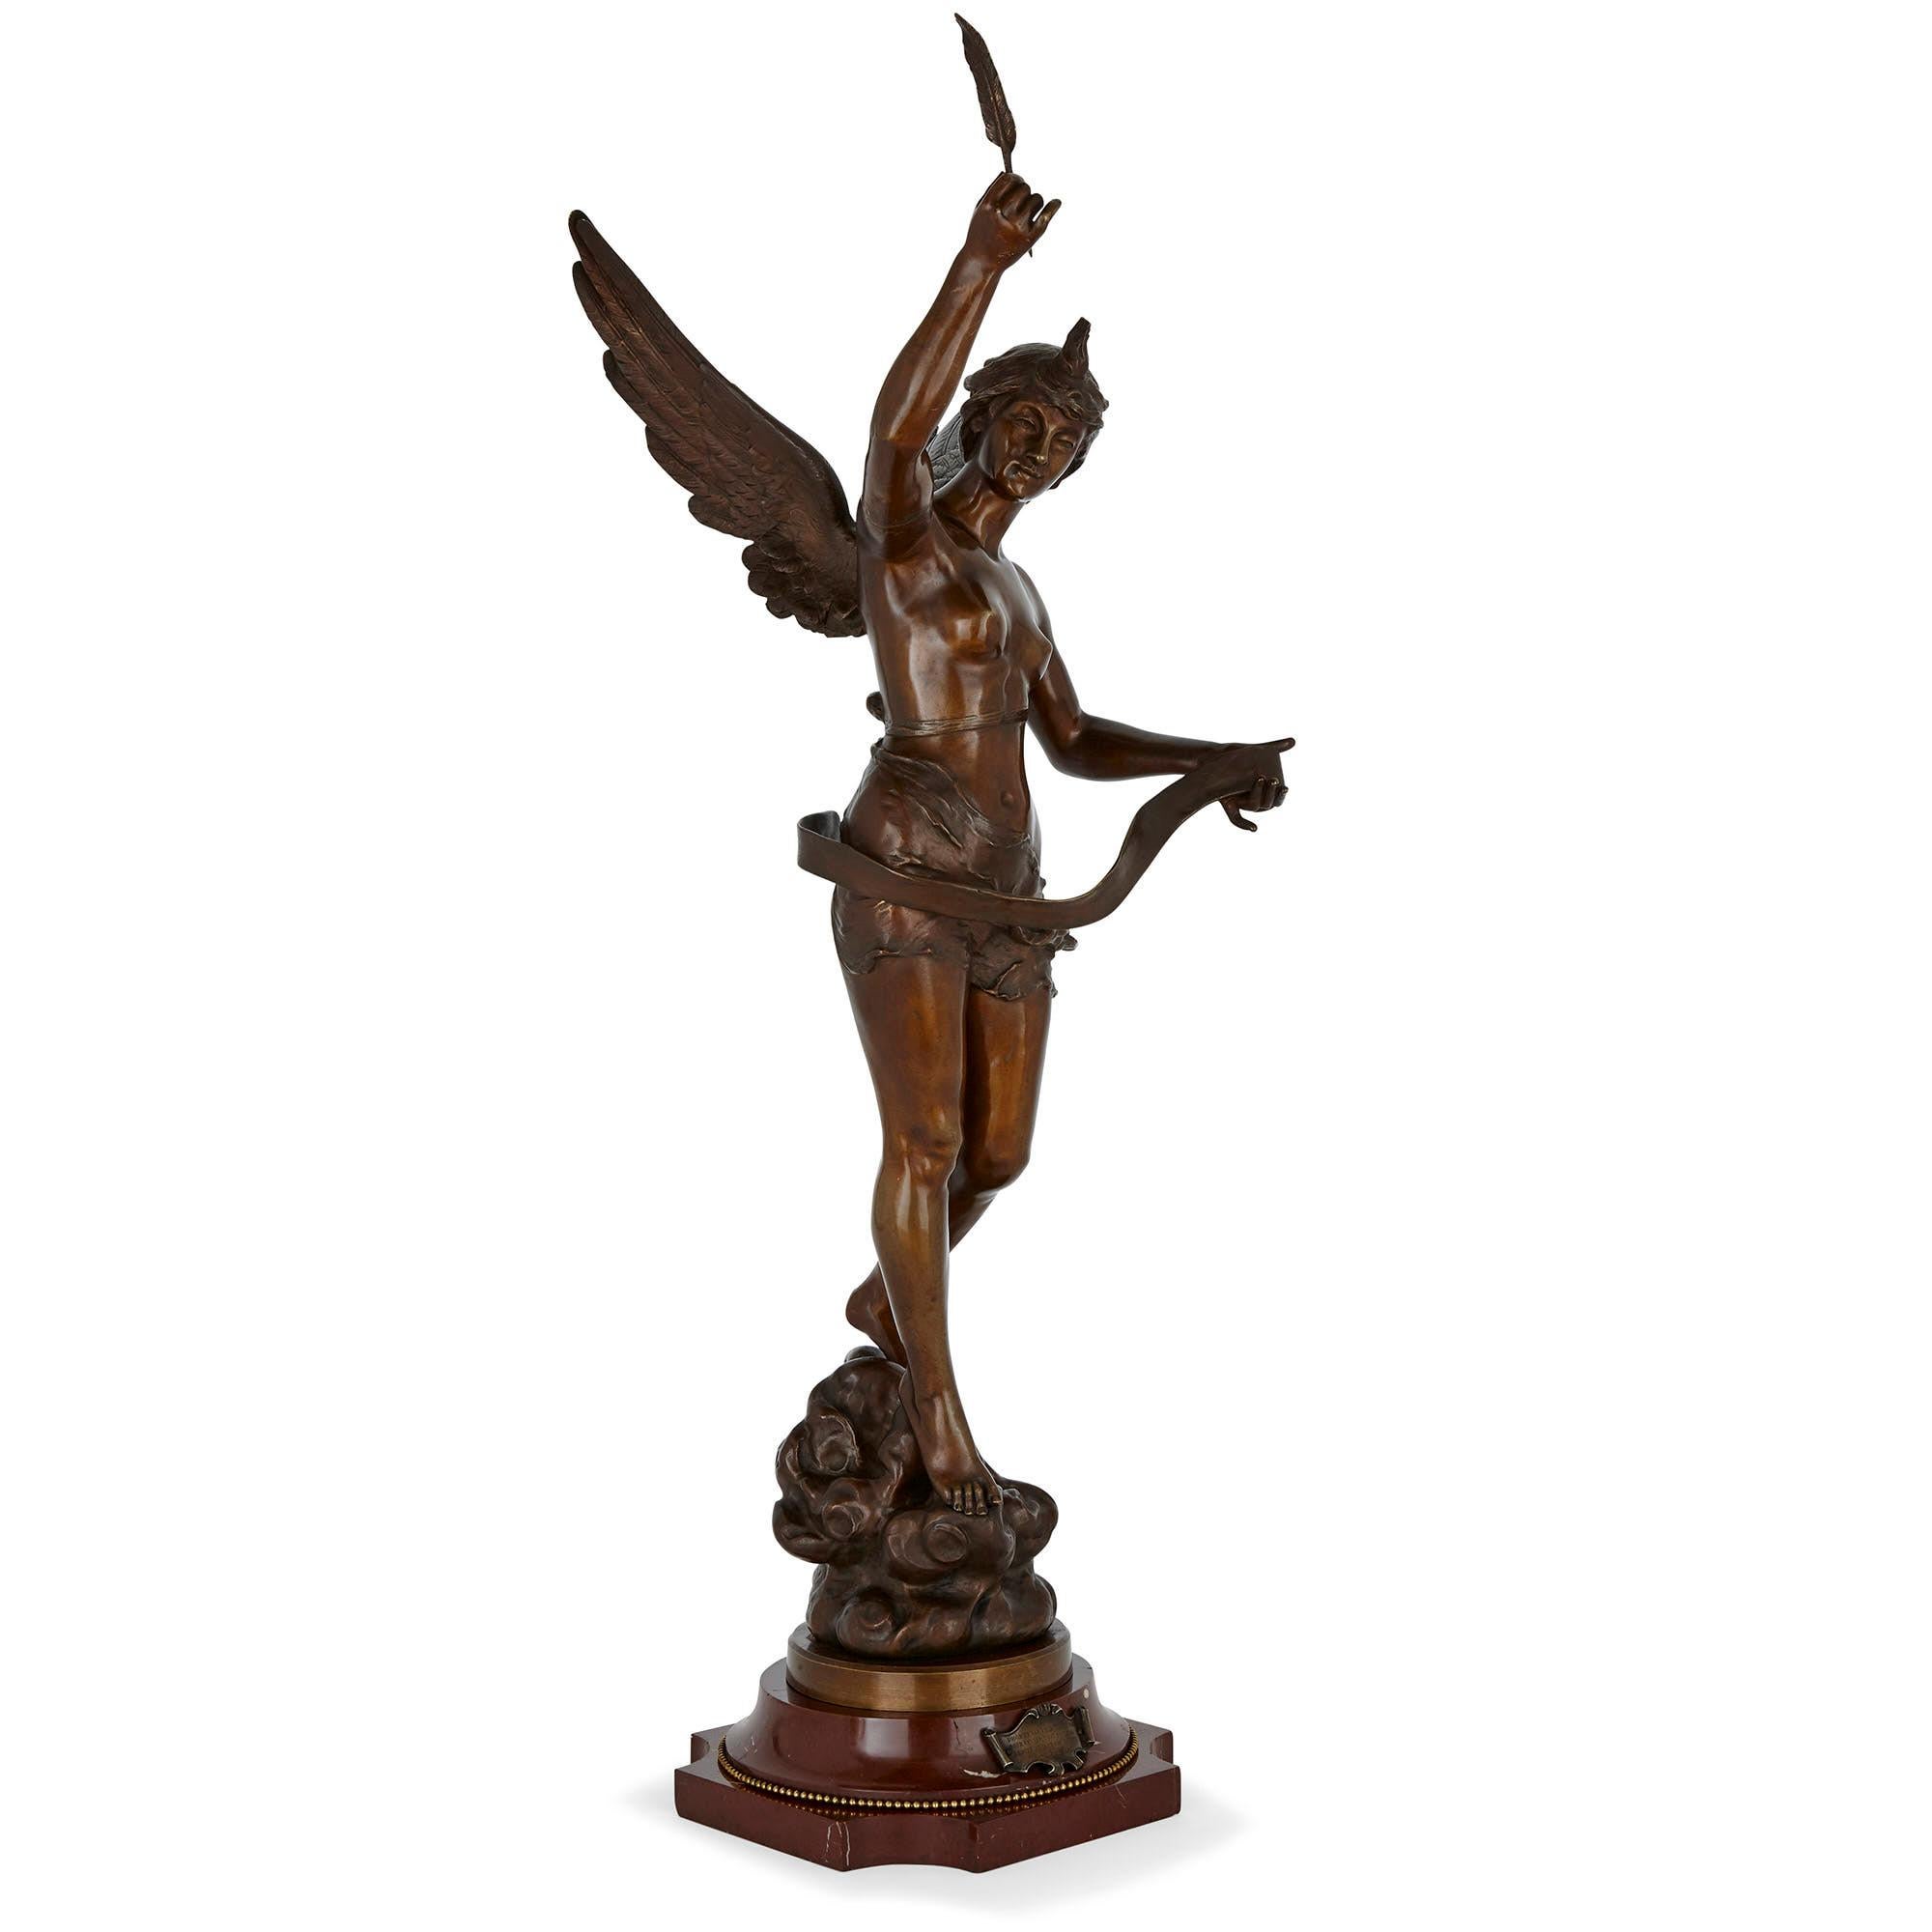 Diese patinierte Bronzeskulptur des französischen Bildhauers Ernest Justin Ferrand zeigt eine weibliche geflügelte Figur, die einen Federkiel und eine entrollte Papierrolle hält. Sie steht naturalistisch, in klassischem Kontrapost, auf einem Sockel